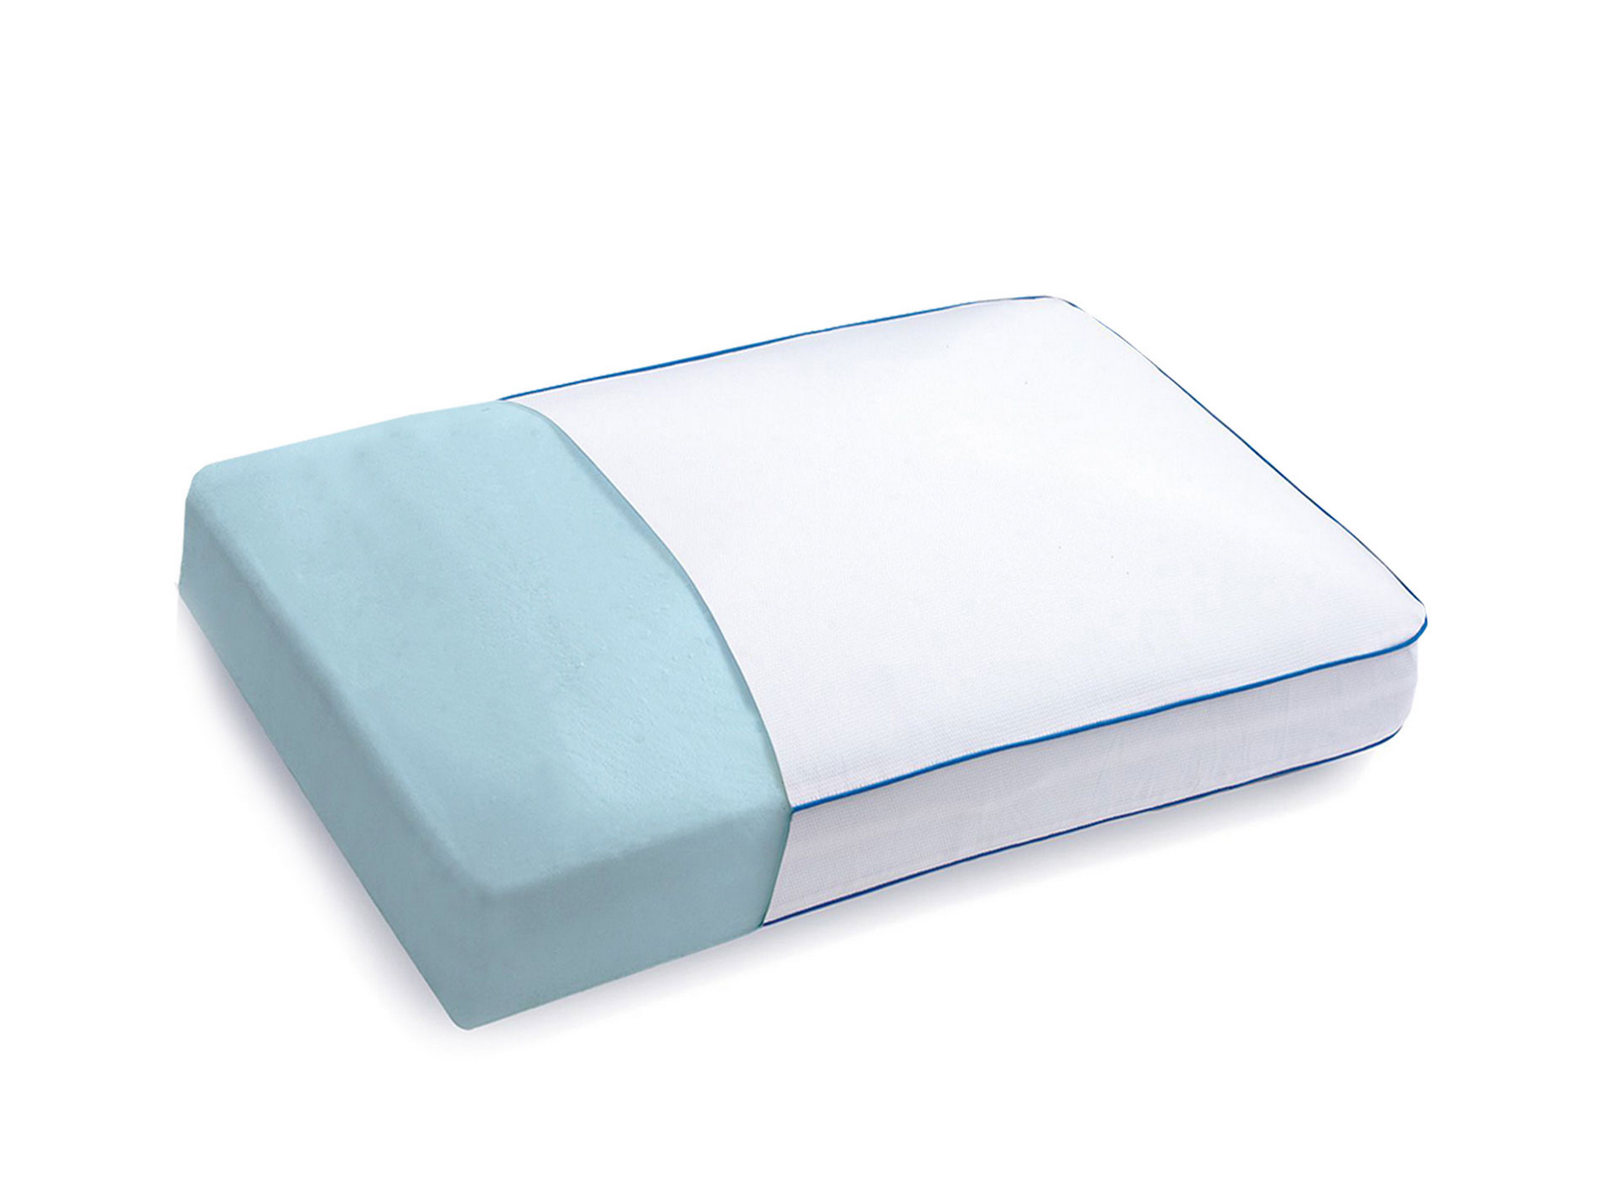 Serta Gel Memory Foam Side Sleeper Pillow